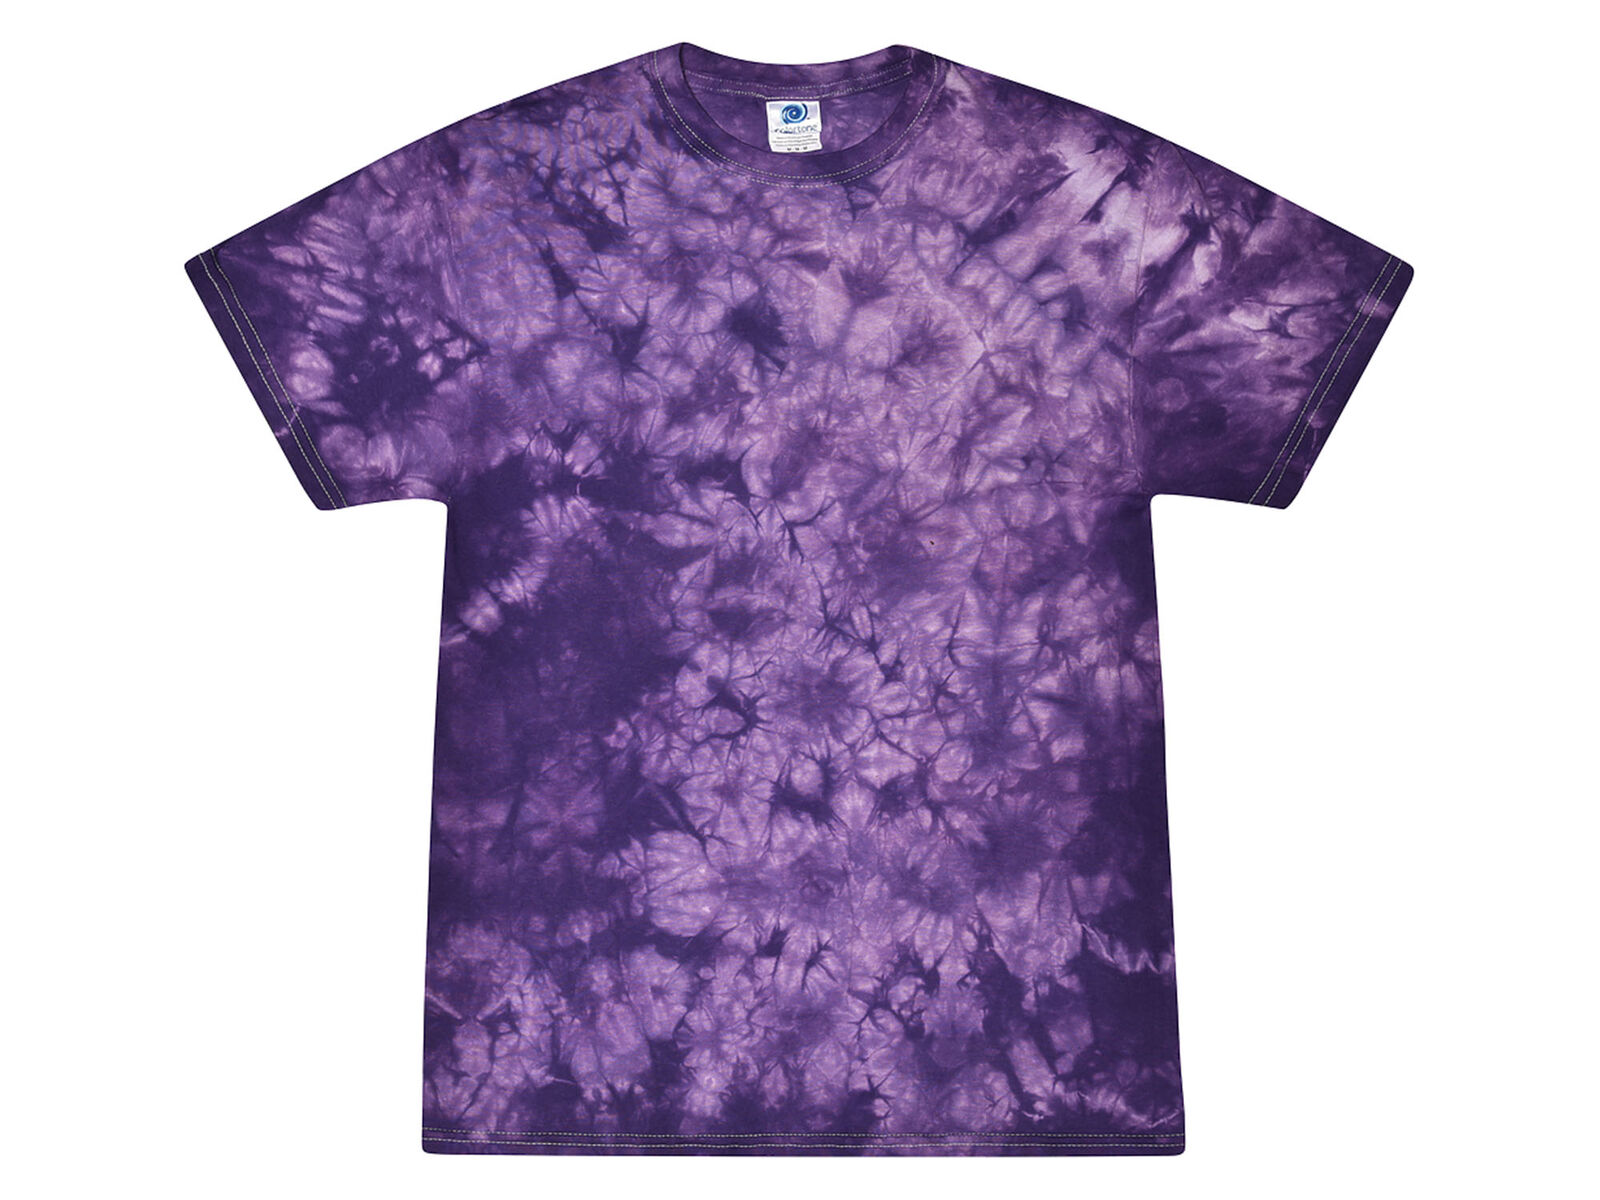 Tie Dye Crystal Purple T-Shirts S M L XL 2XL 3XL Cotton Colo